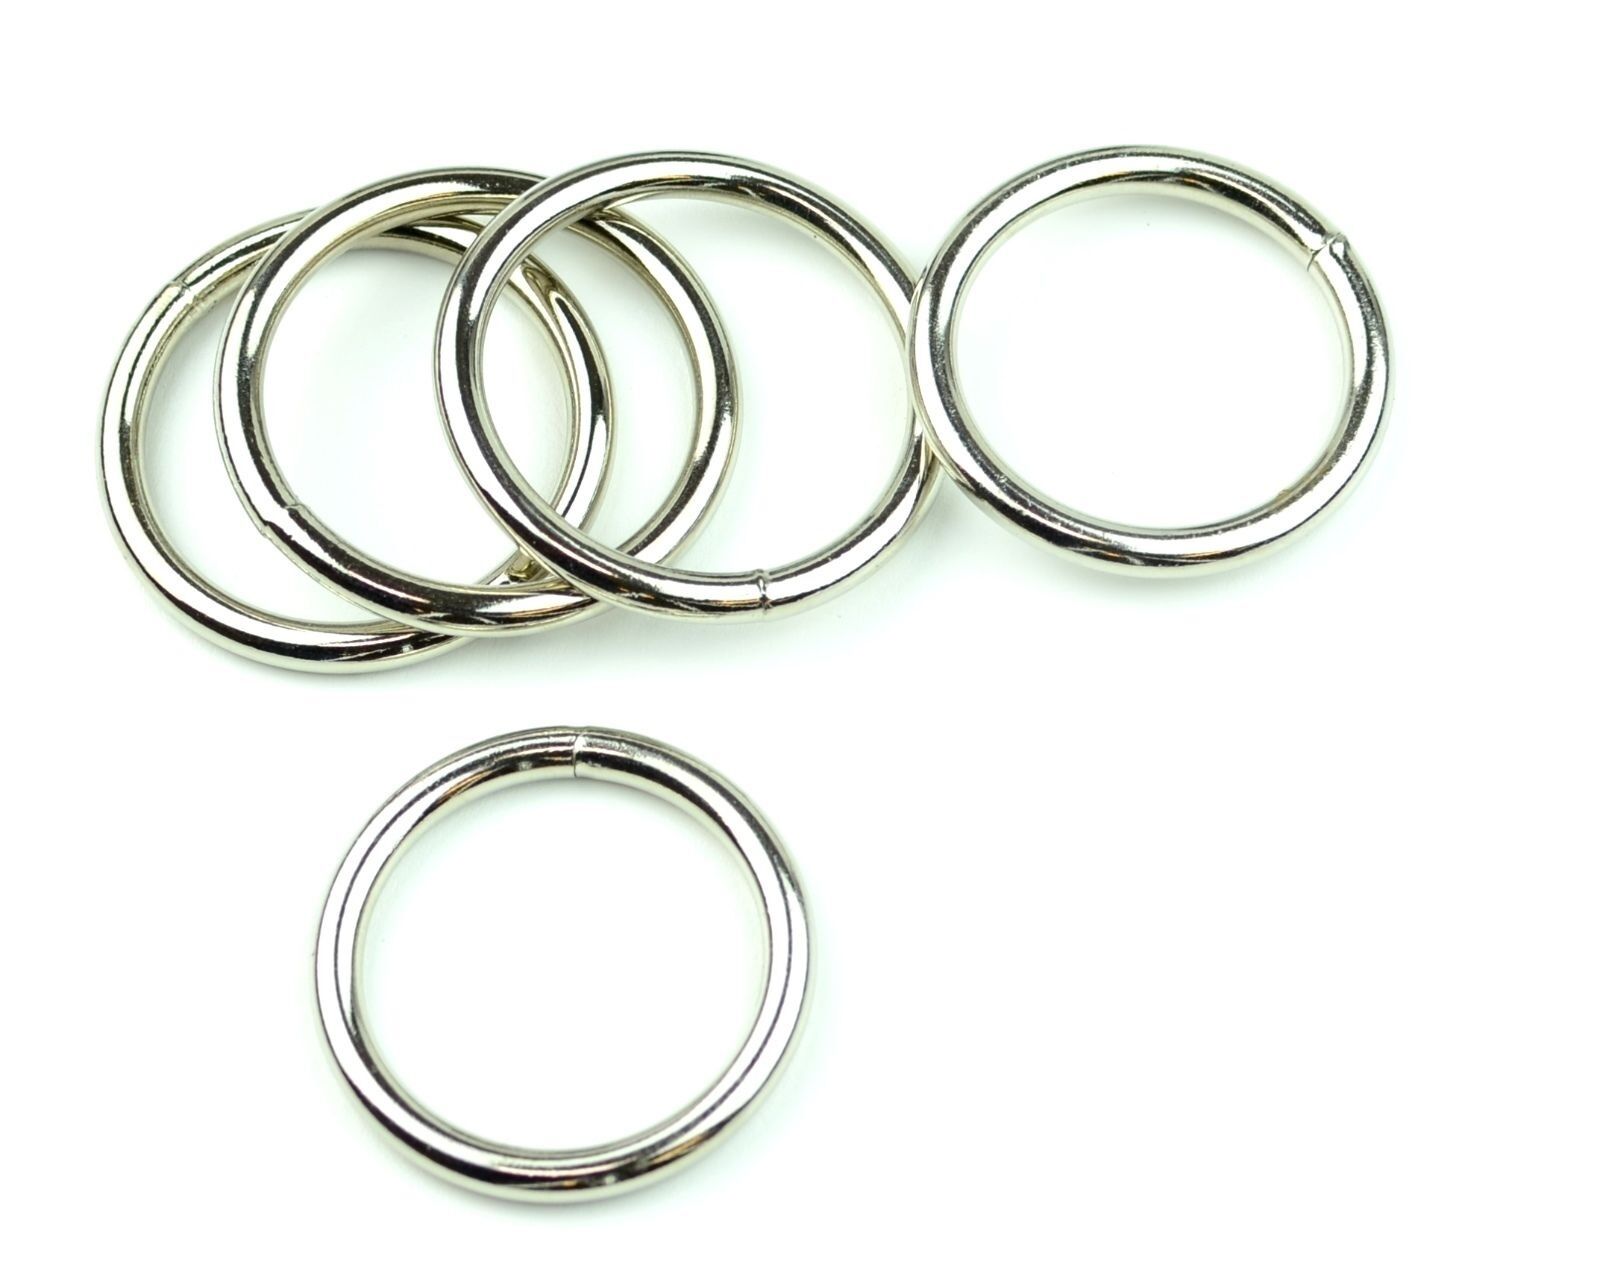 Nickel Plated Steel Rings Welded 1 1/2 " Eye Size-10 Pcs